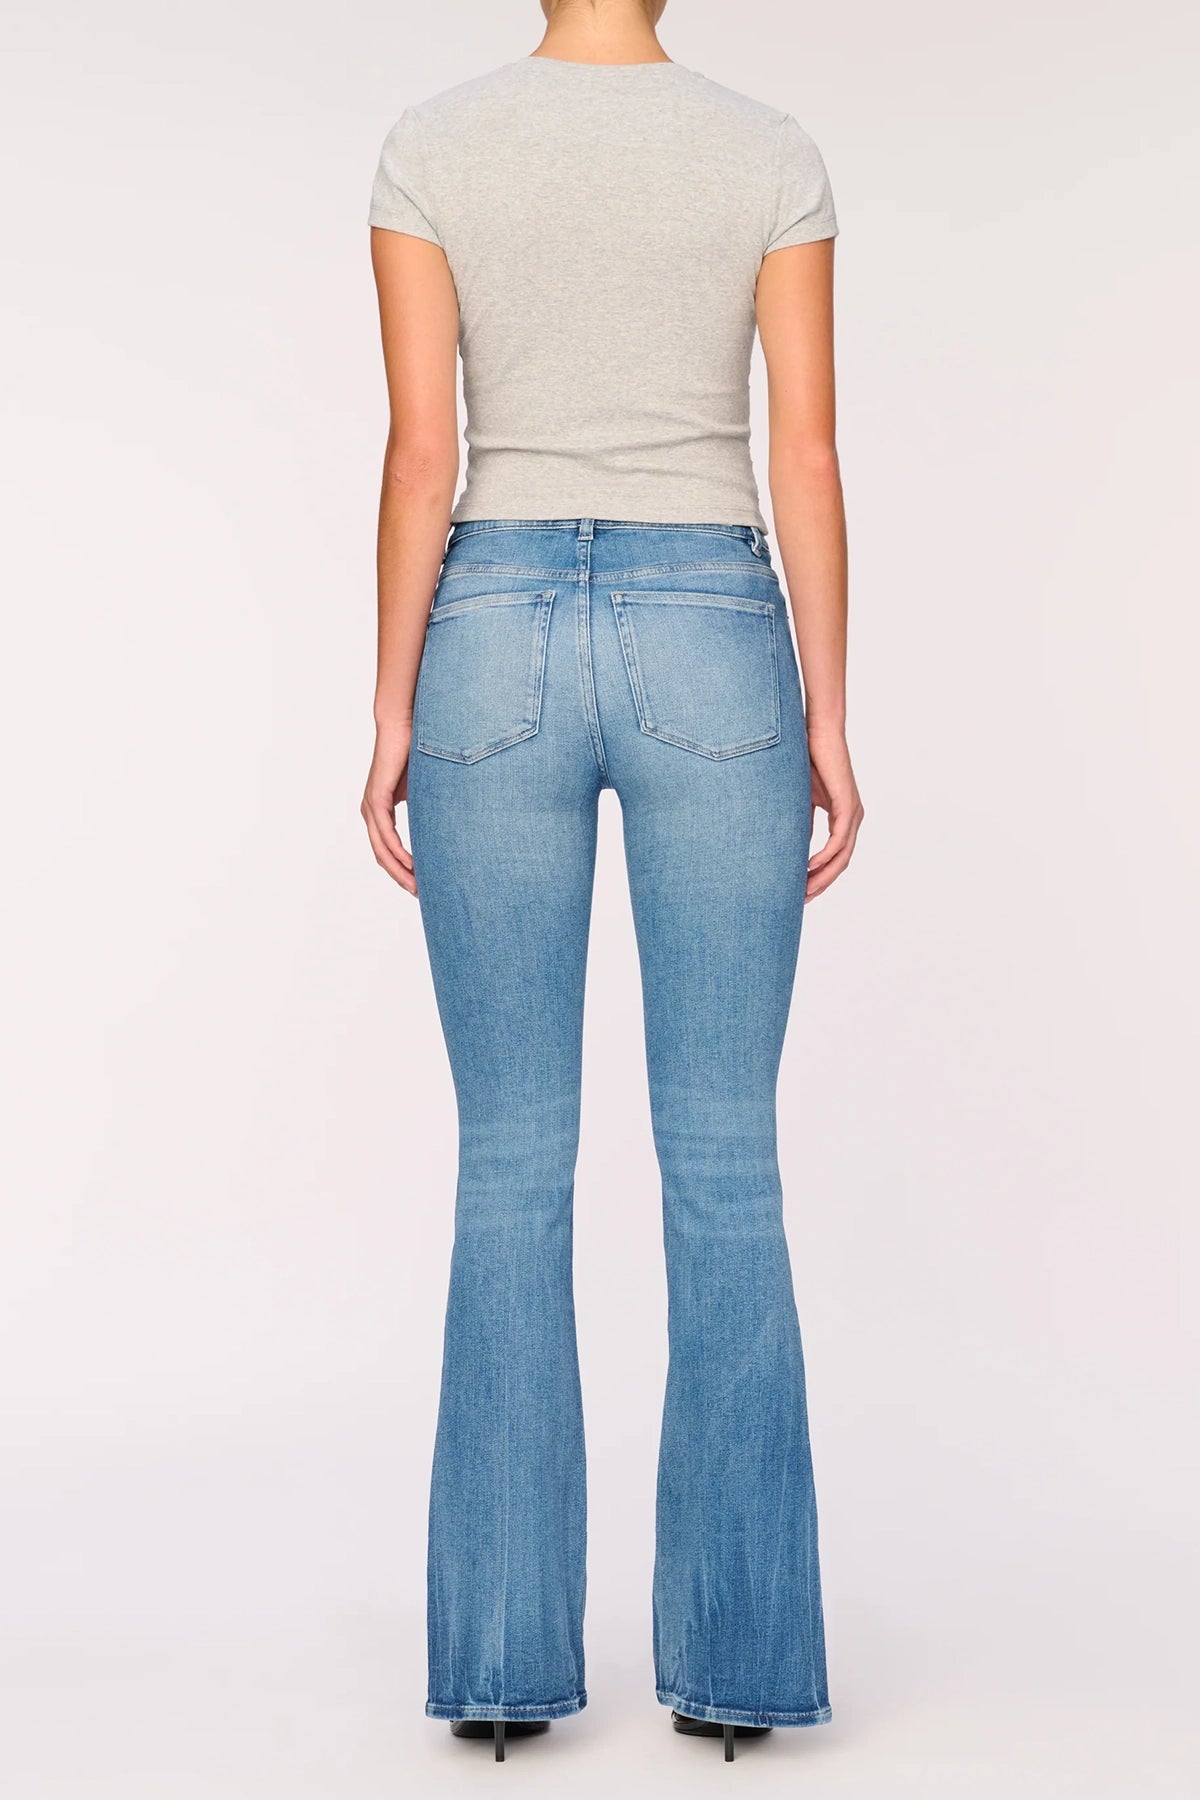 DL1961 Bridget Boot Jeans